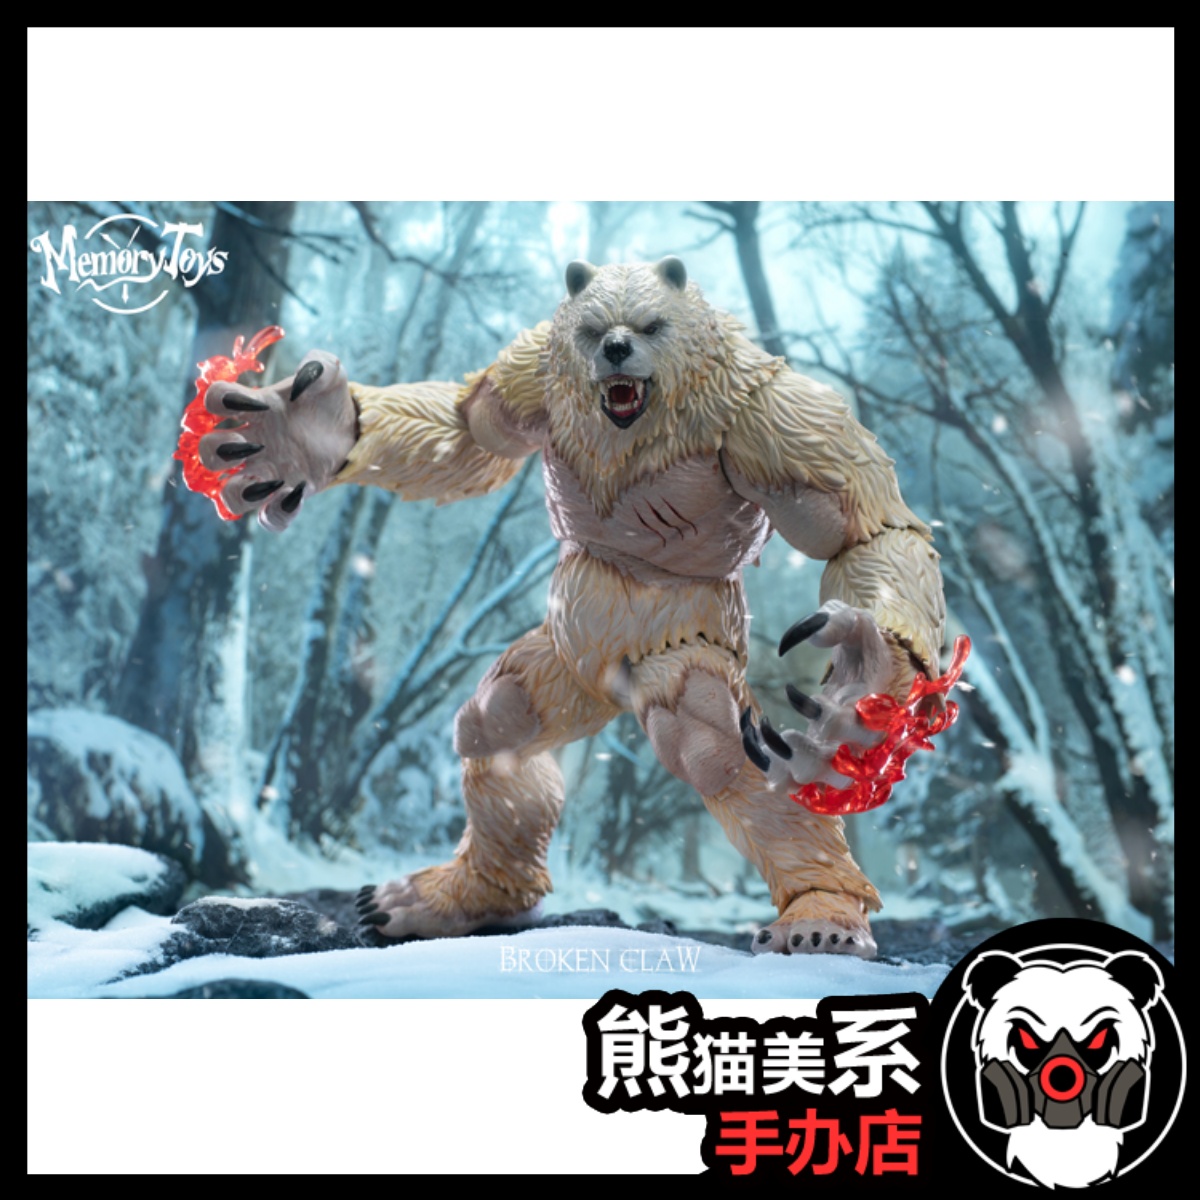 展示Memory toys 冒险者世界 熊人战士 碎爪 限定色白熊 可动人偶